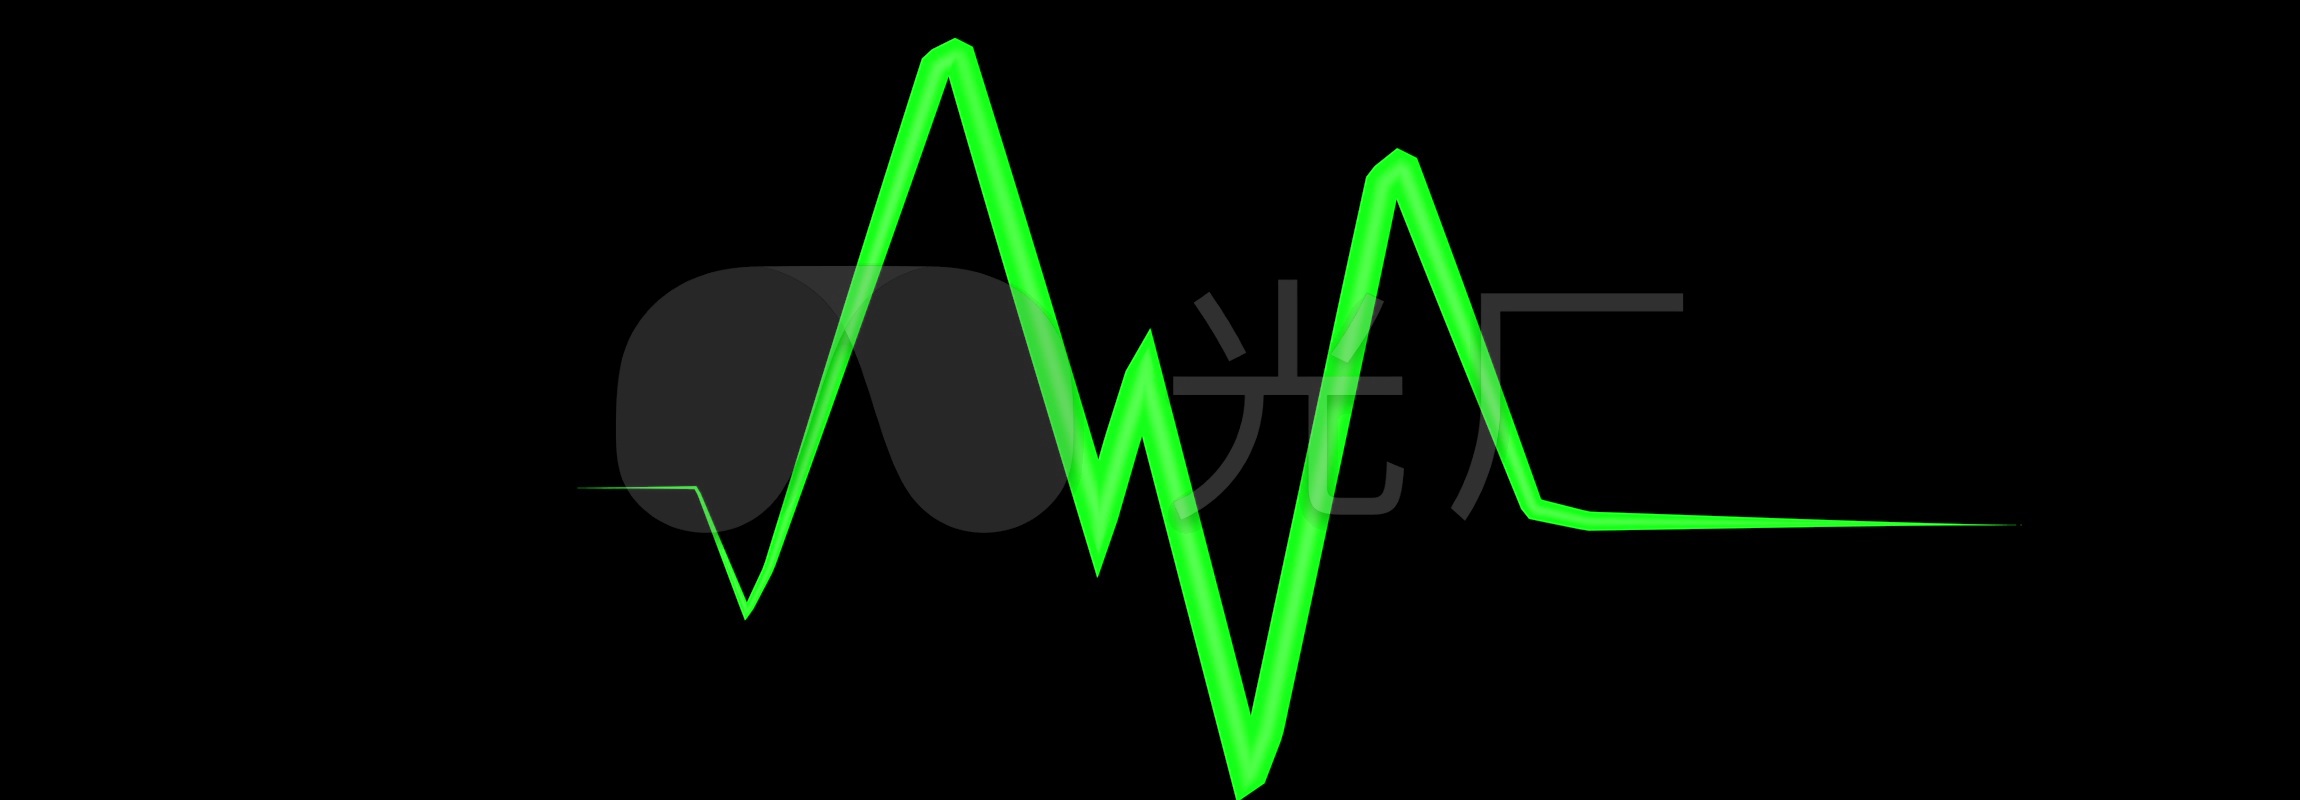 绿色心电图跳动波波形心跳